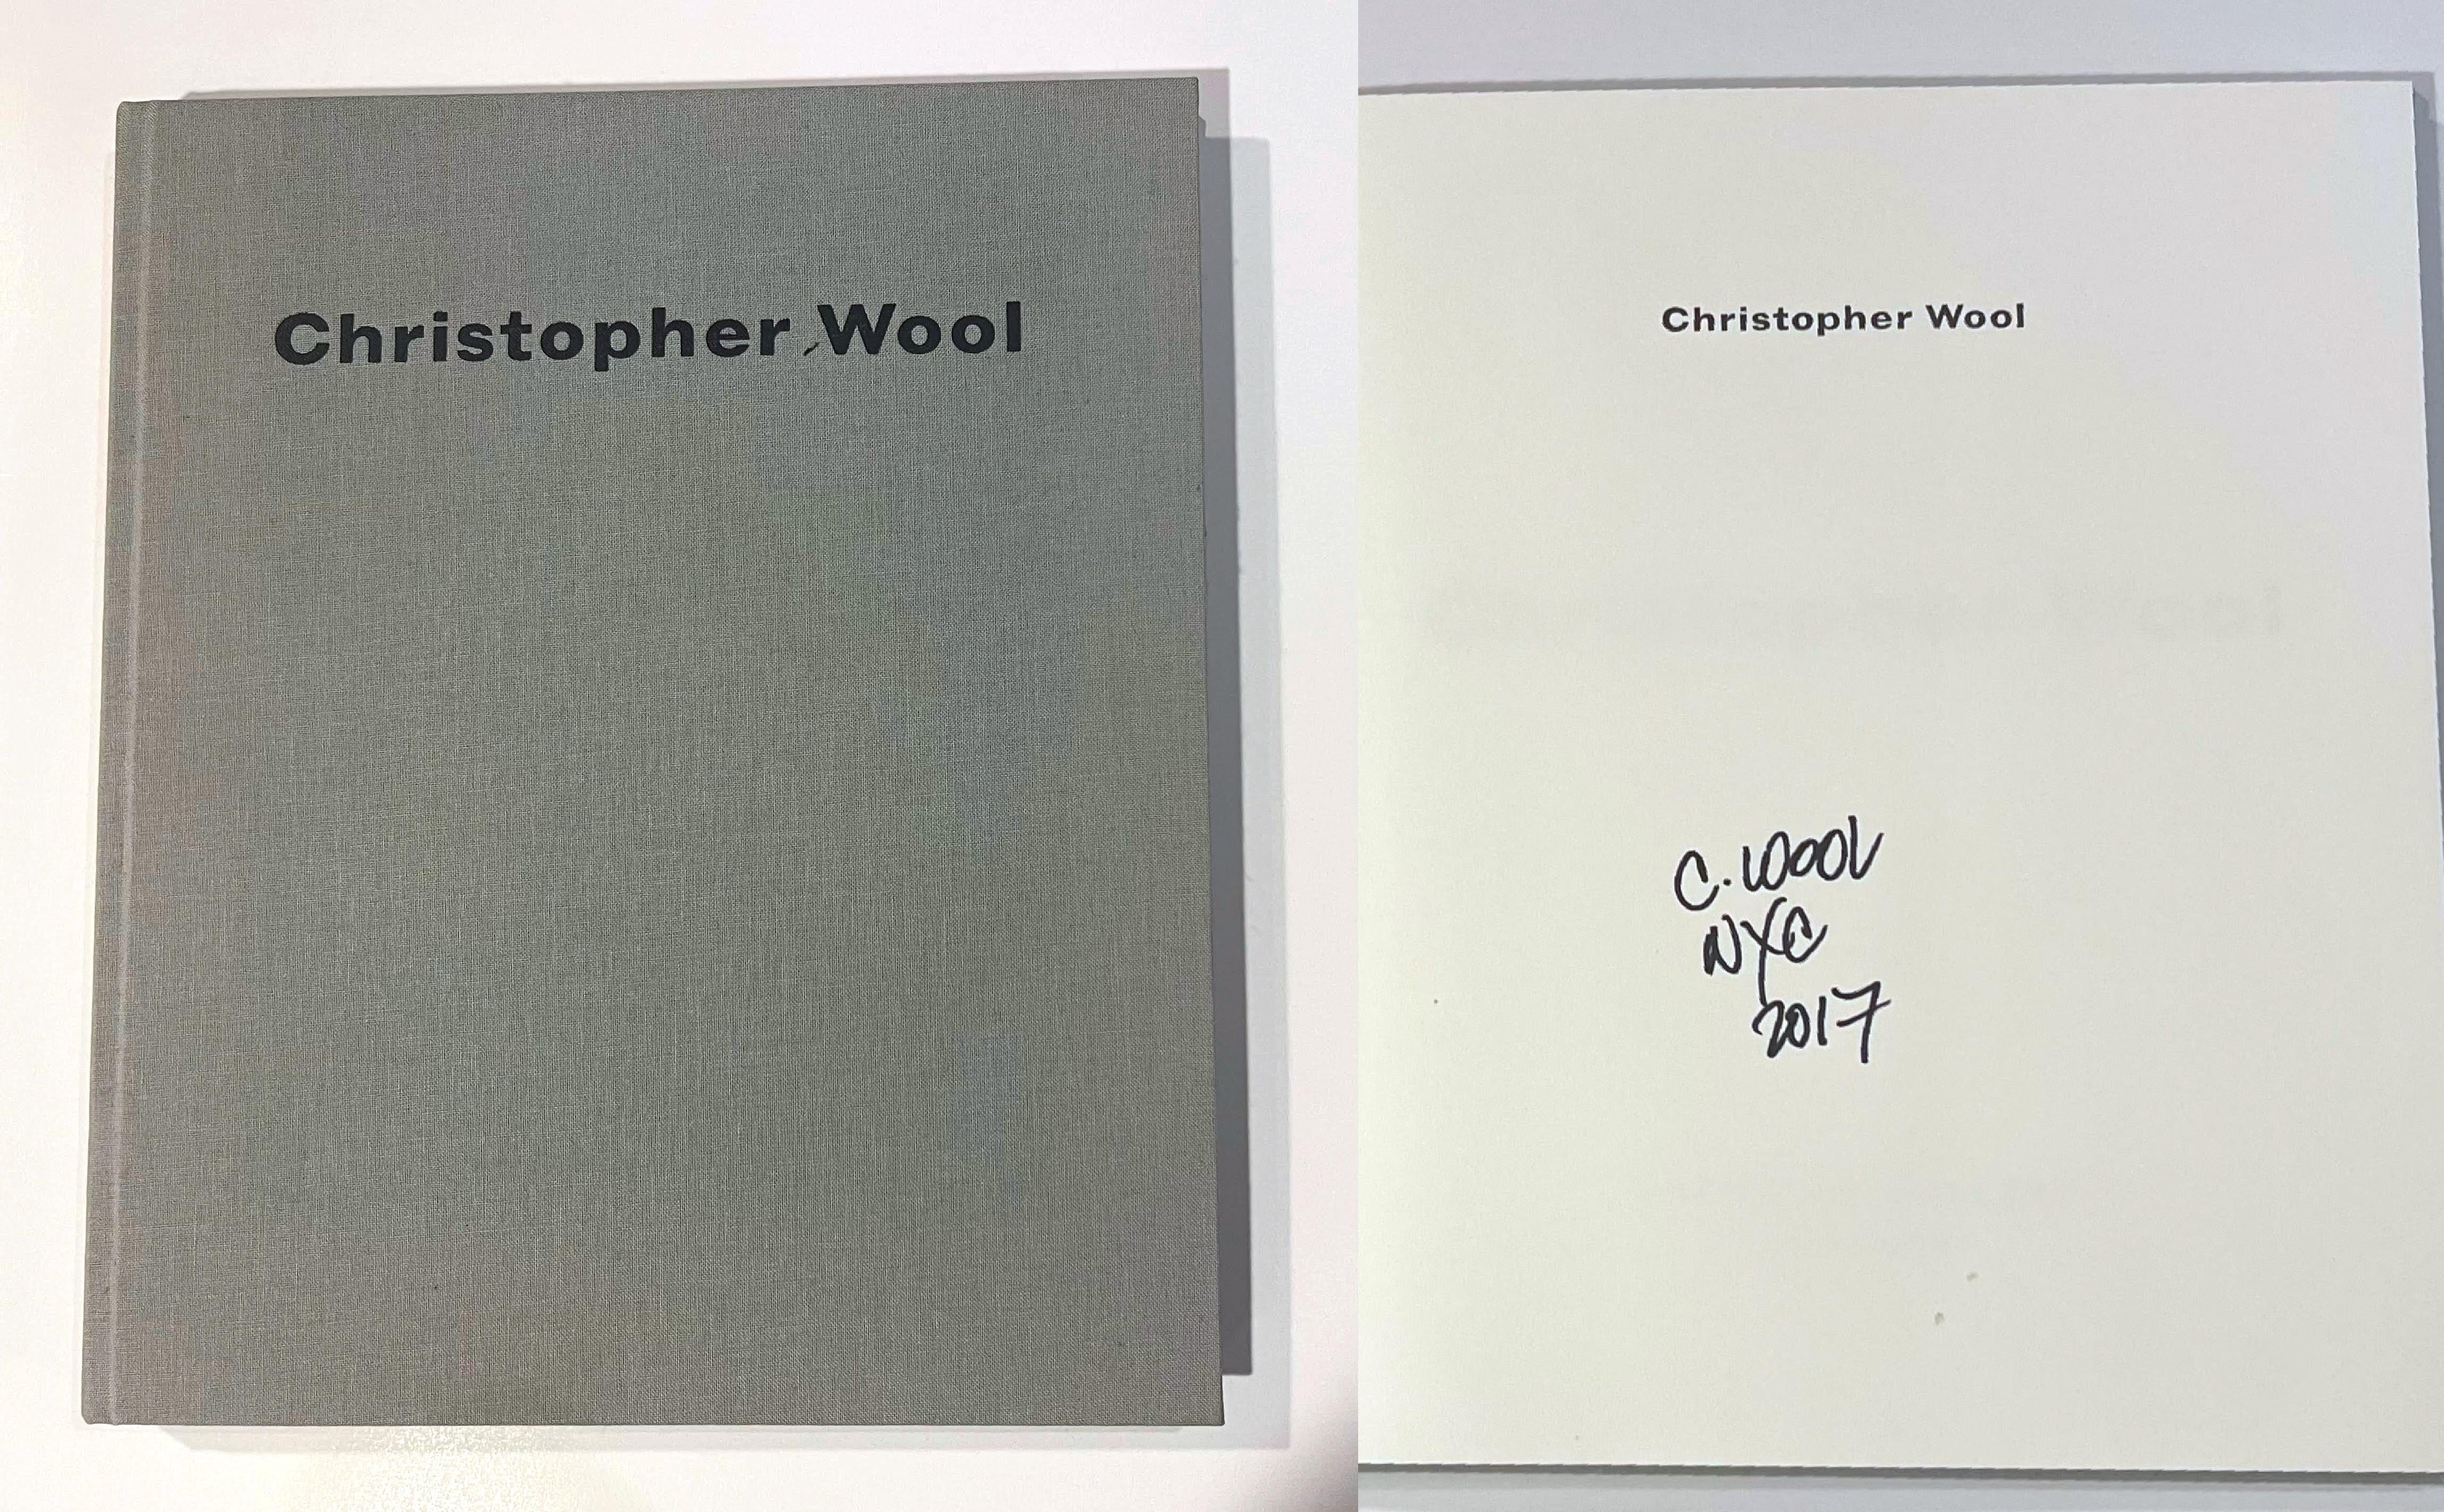 Christopher Wool (signé et daté à la main), 2006
Monographie reliée (signée et datée à la main par Christopher Wool)
Signé et daté à la main 2017 par Christopher Wool sur la page de demi-titre.
12 1/4 × 10 1/4 × 3/4 pouces
Cette élégante monographie